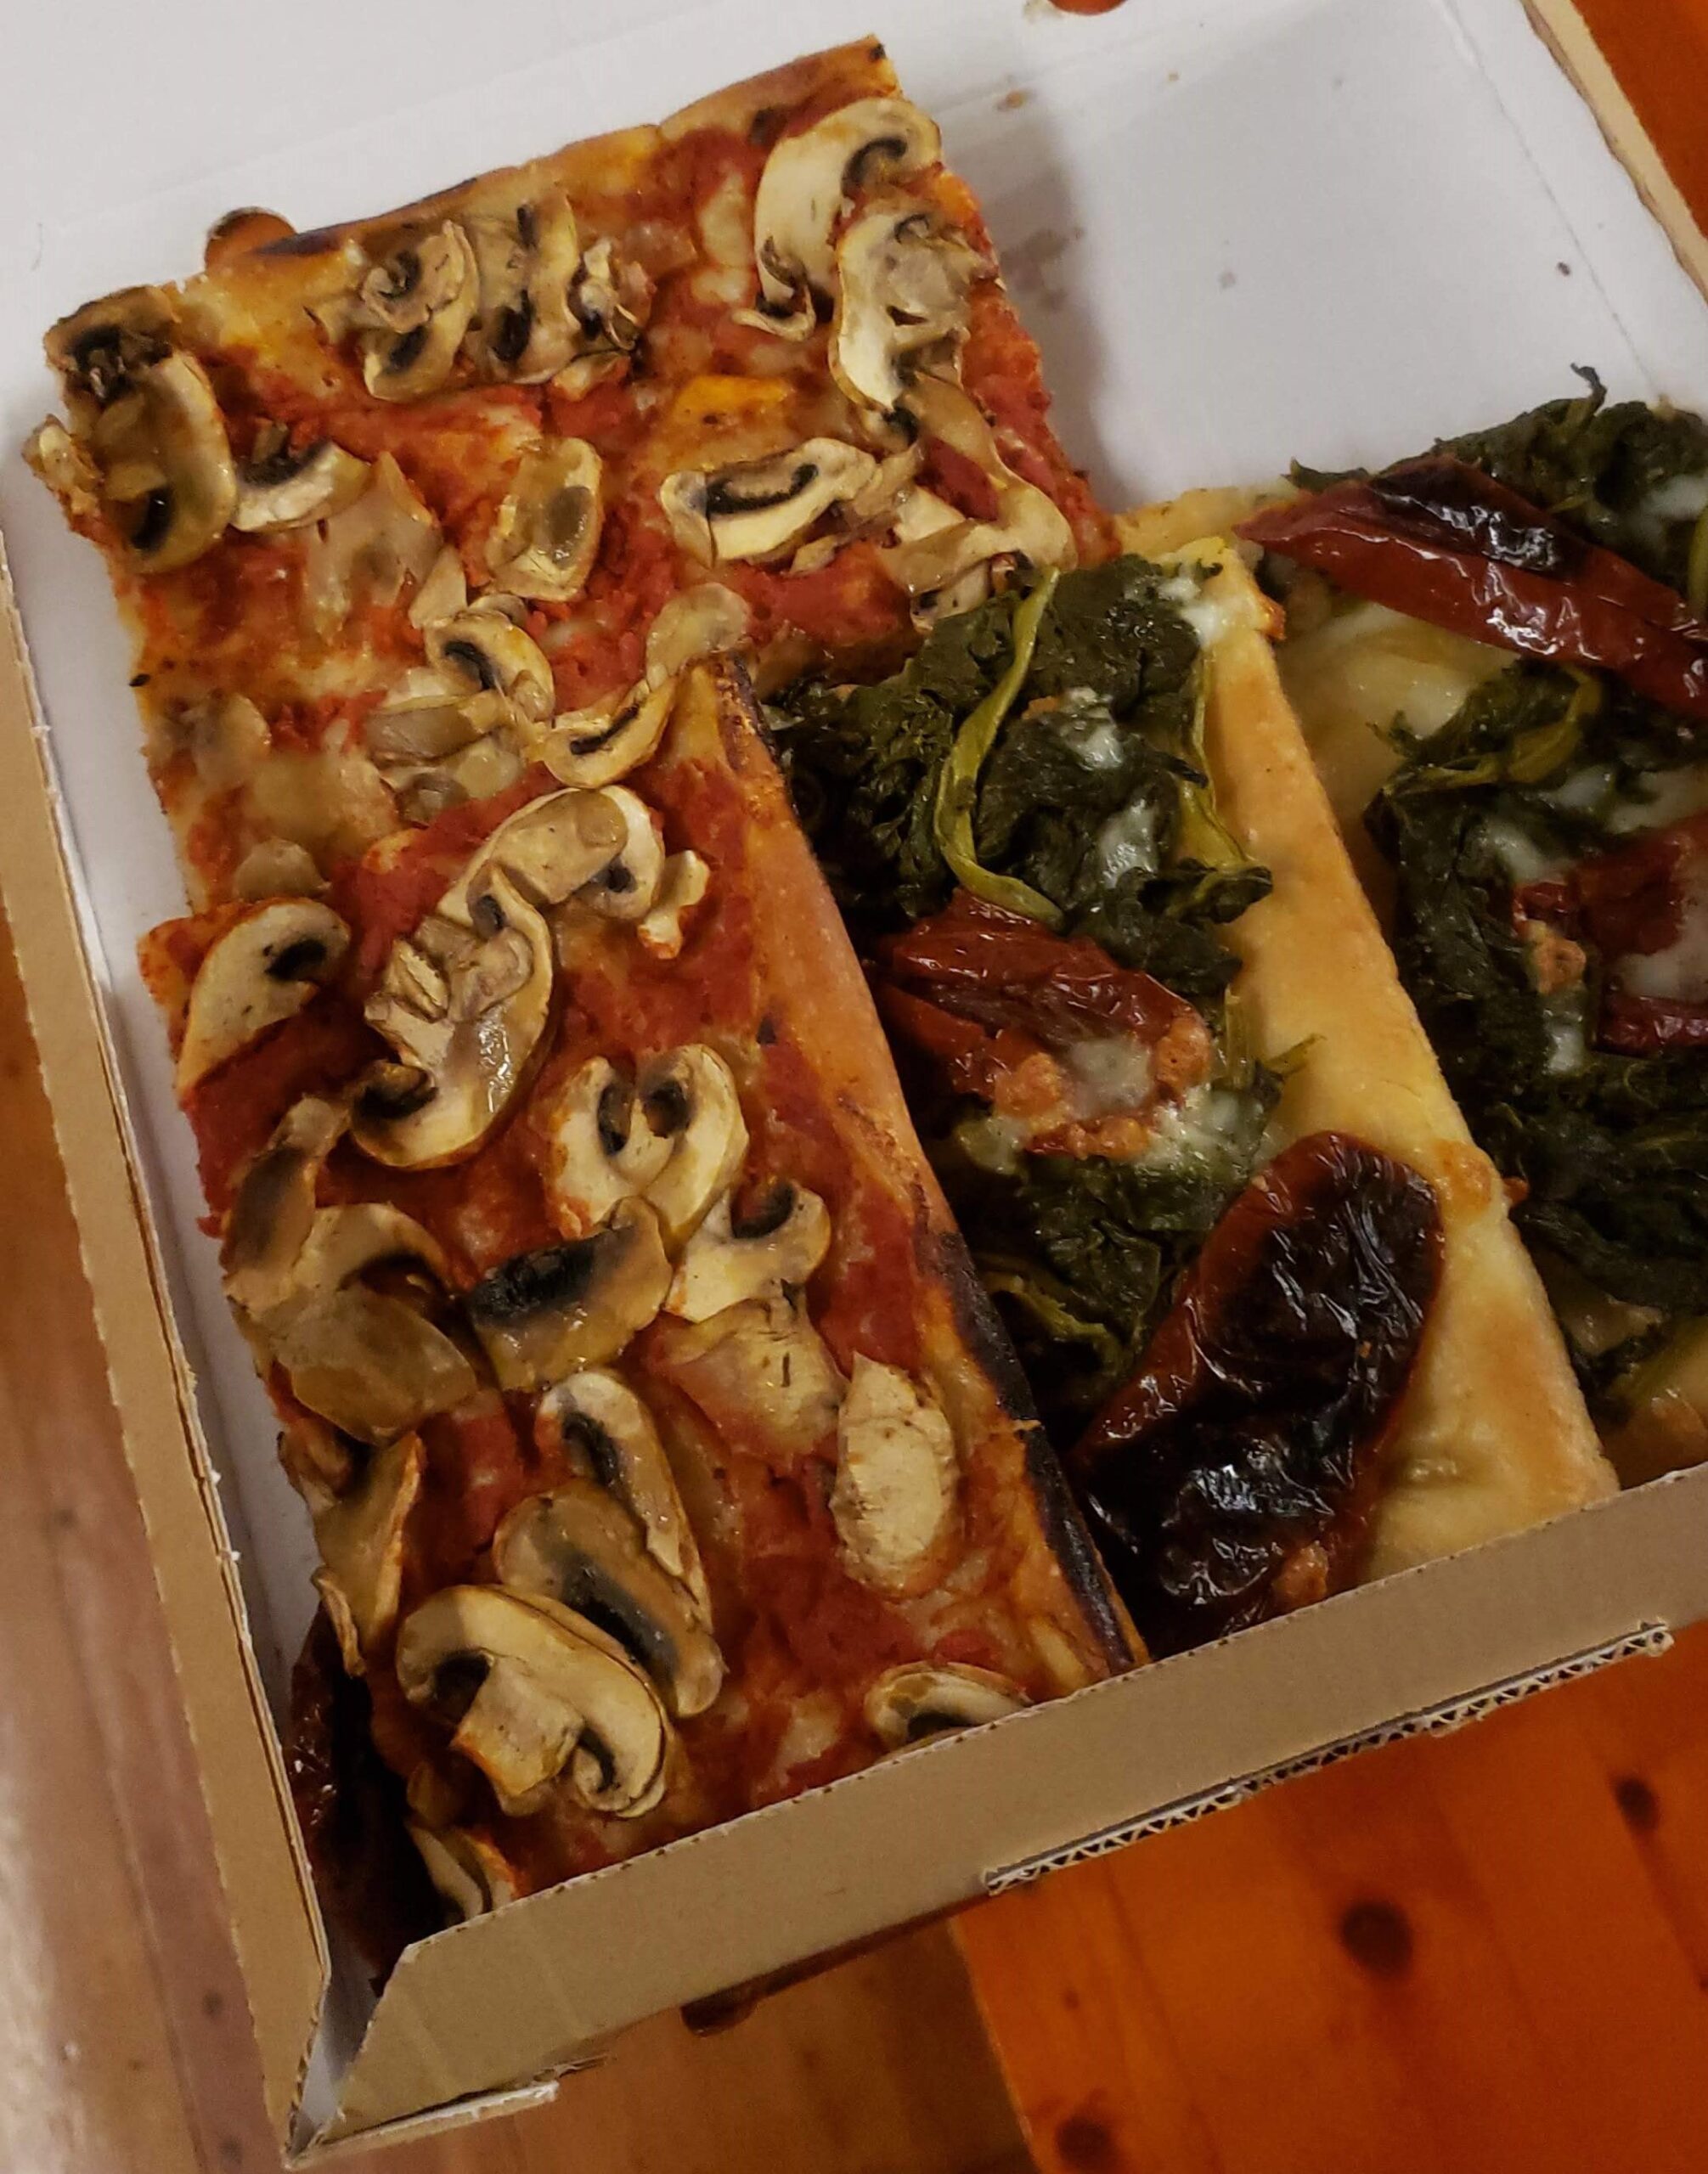 Uma fatia de pizza com cogumelos e outra com espinafre e tomate seco em uma caixa aberta sobre uma mesa de madeira.